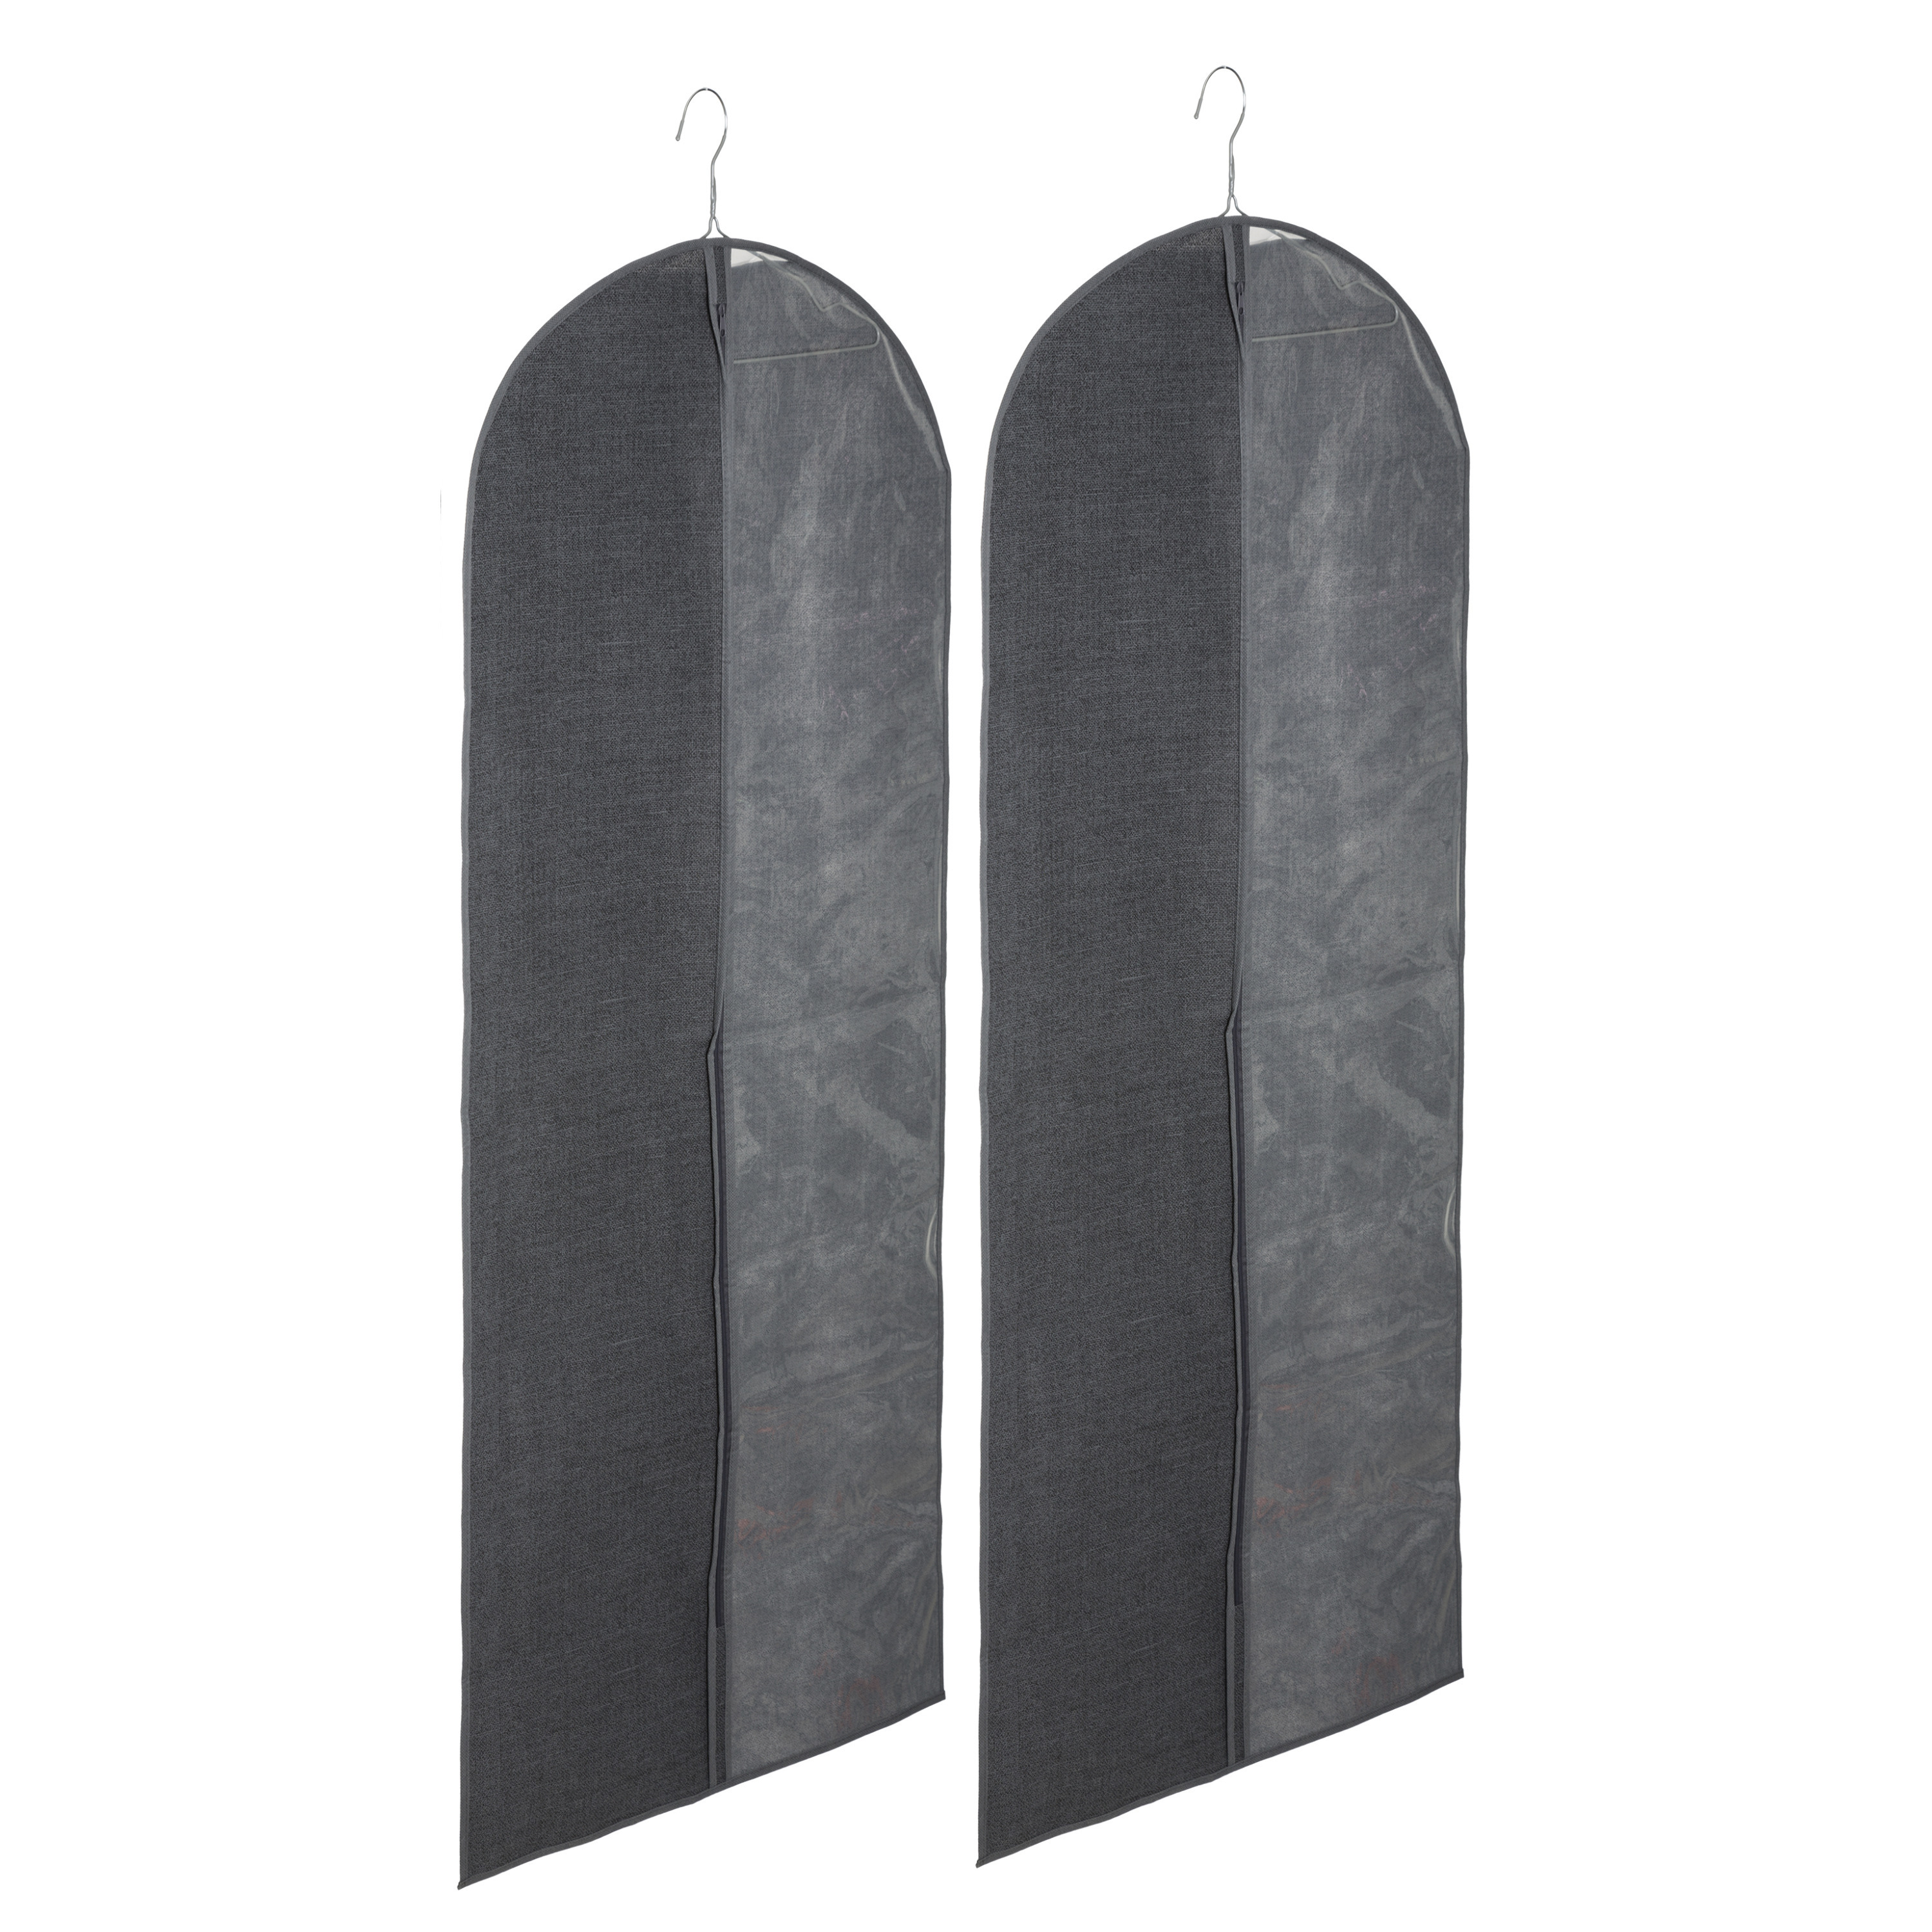 Set van 10x stuks kleding-beschermhoes linnen grijs 130 cm inclusief kledinghangers